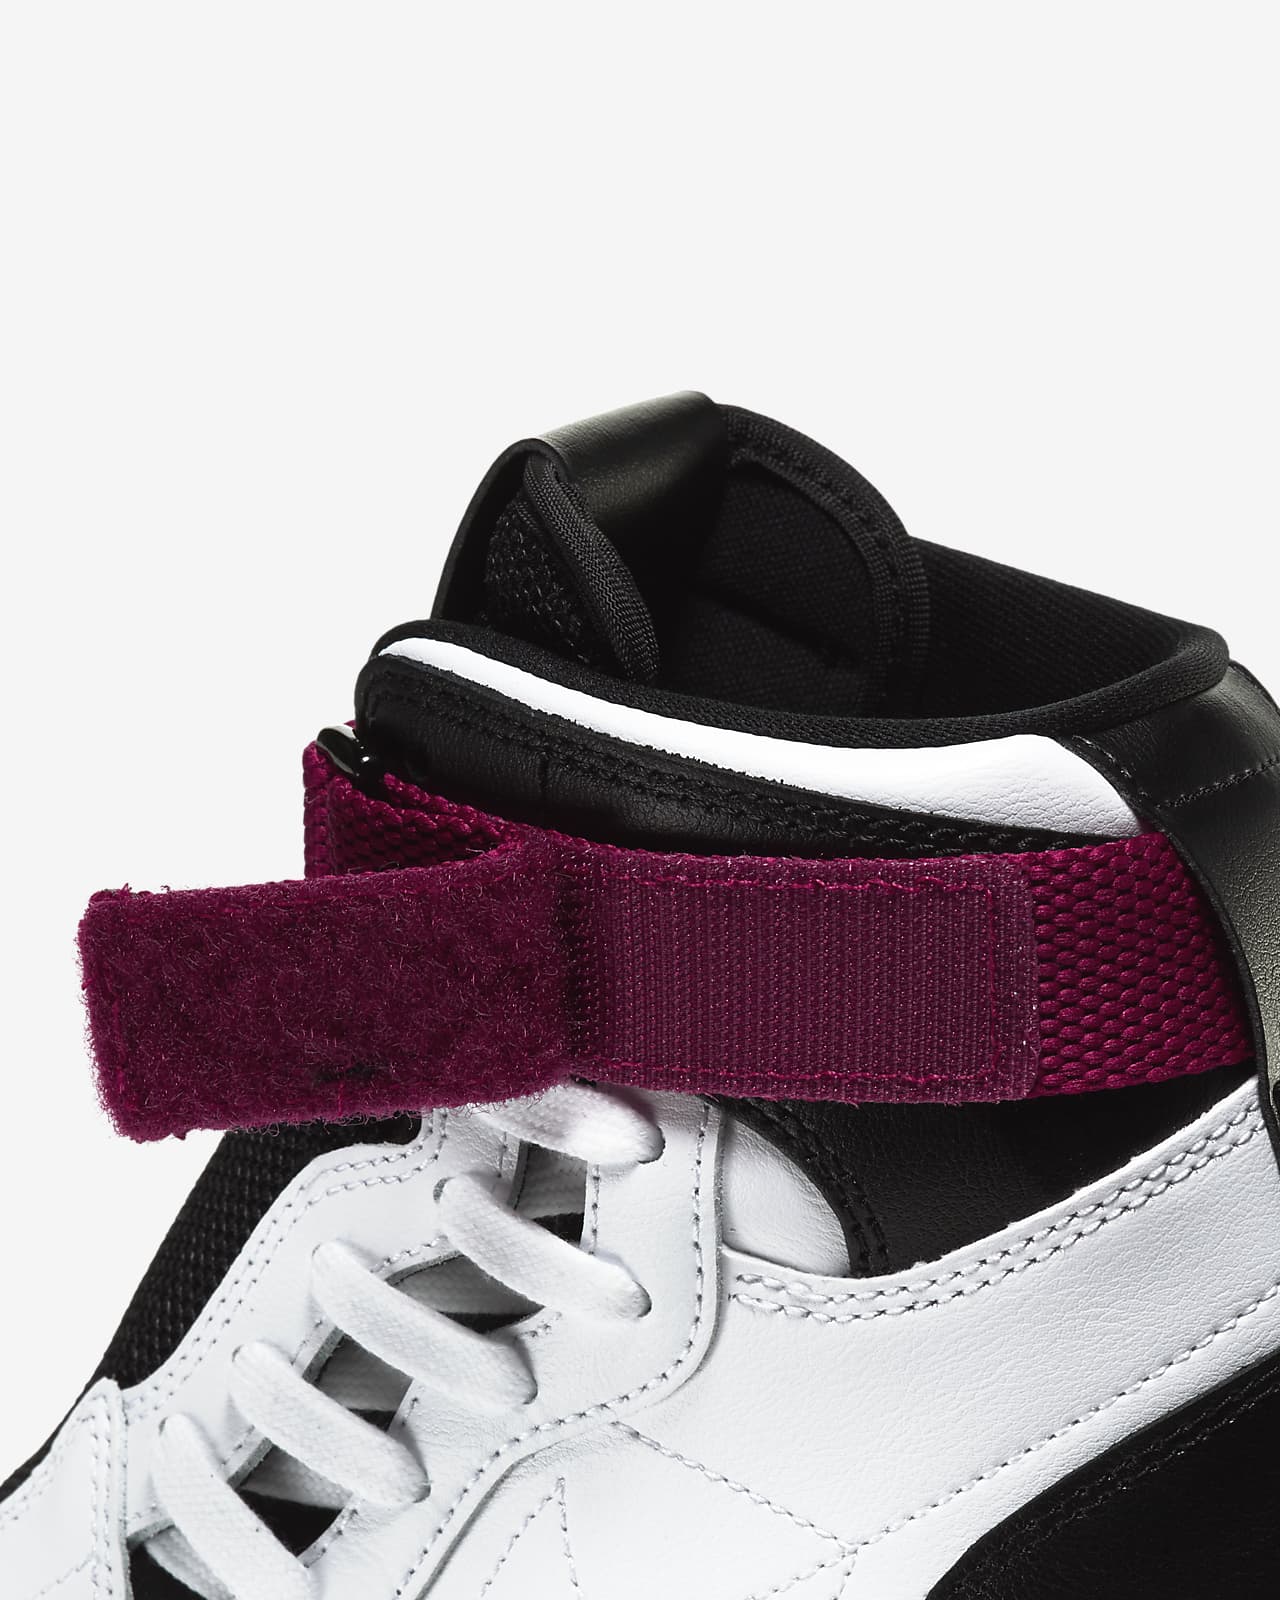 nike air jordan 1 nova sneakers in pink and black